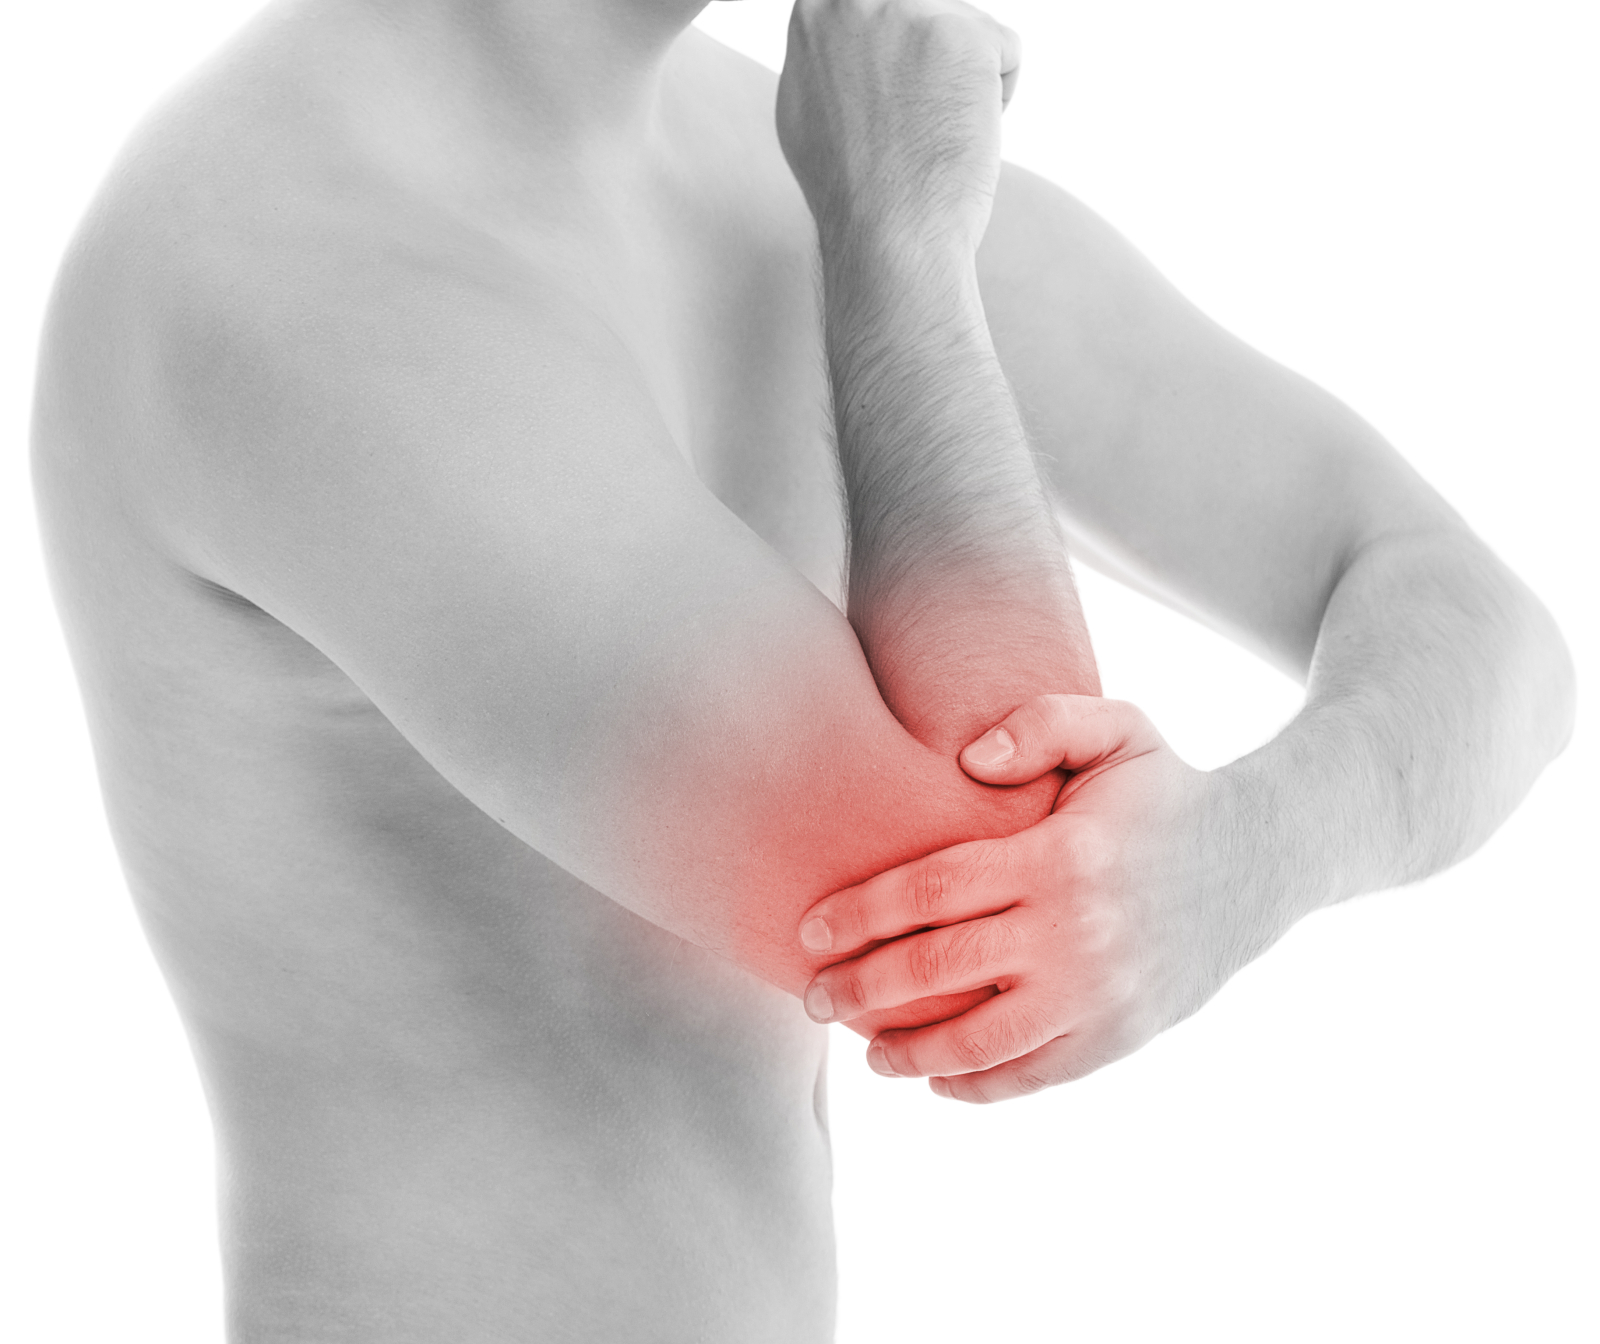 durerea articulației cotului la îndoirea tratamentului tratamentul artrozei deformante a genunchiului